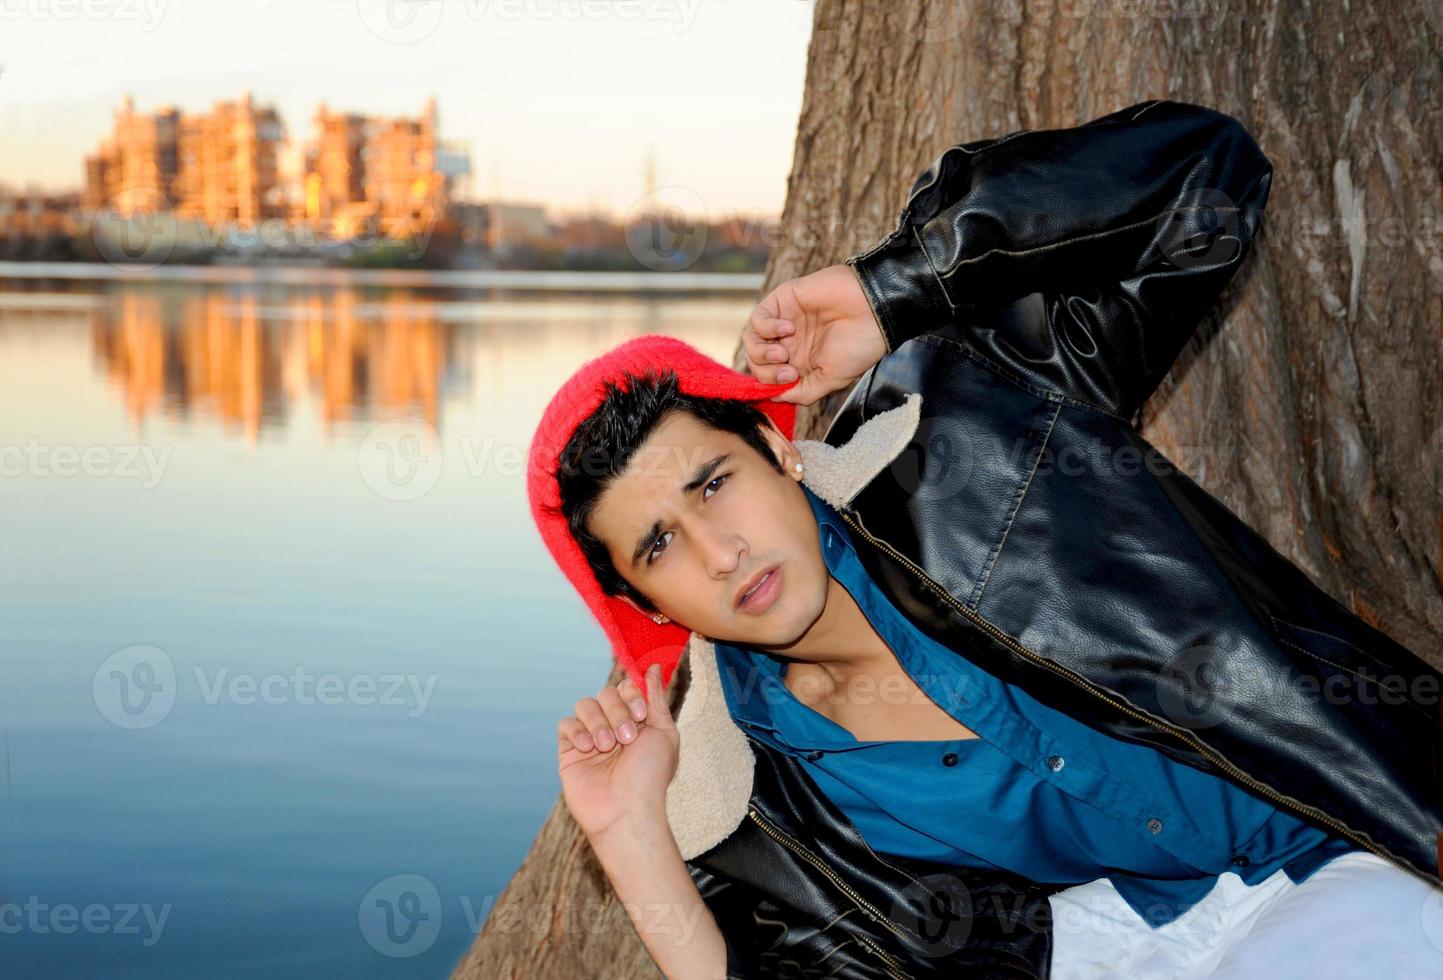 beau jeune homme hispanique dans une pose surprise devant une rivière à austin par une froide journée d'hiver. photo